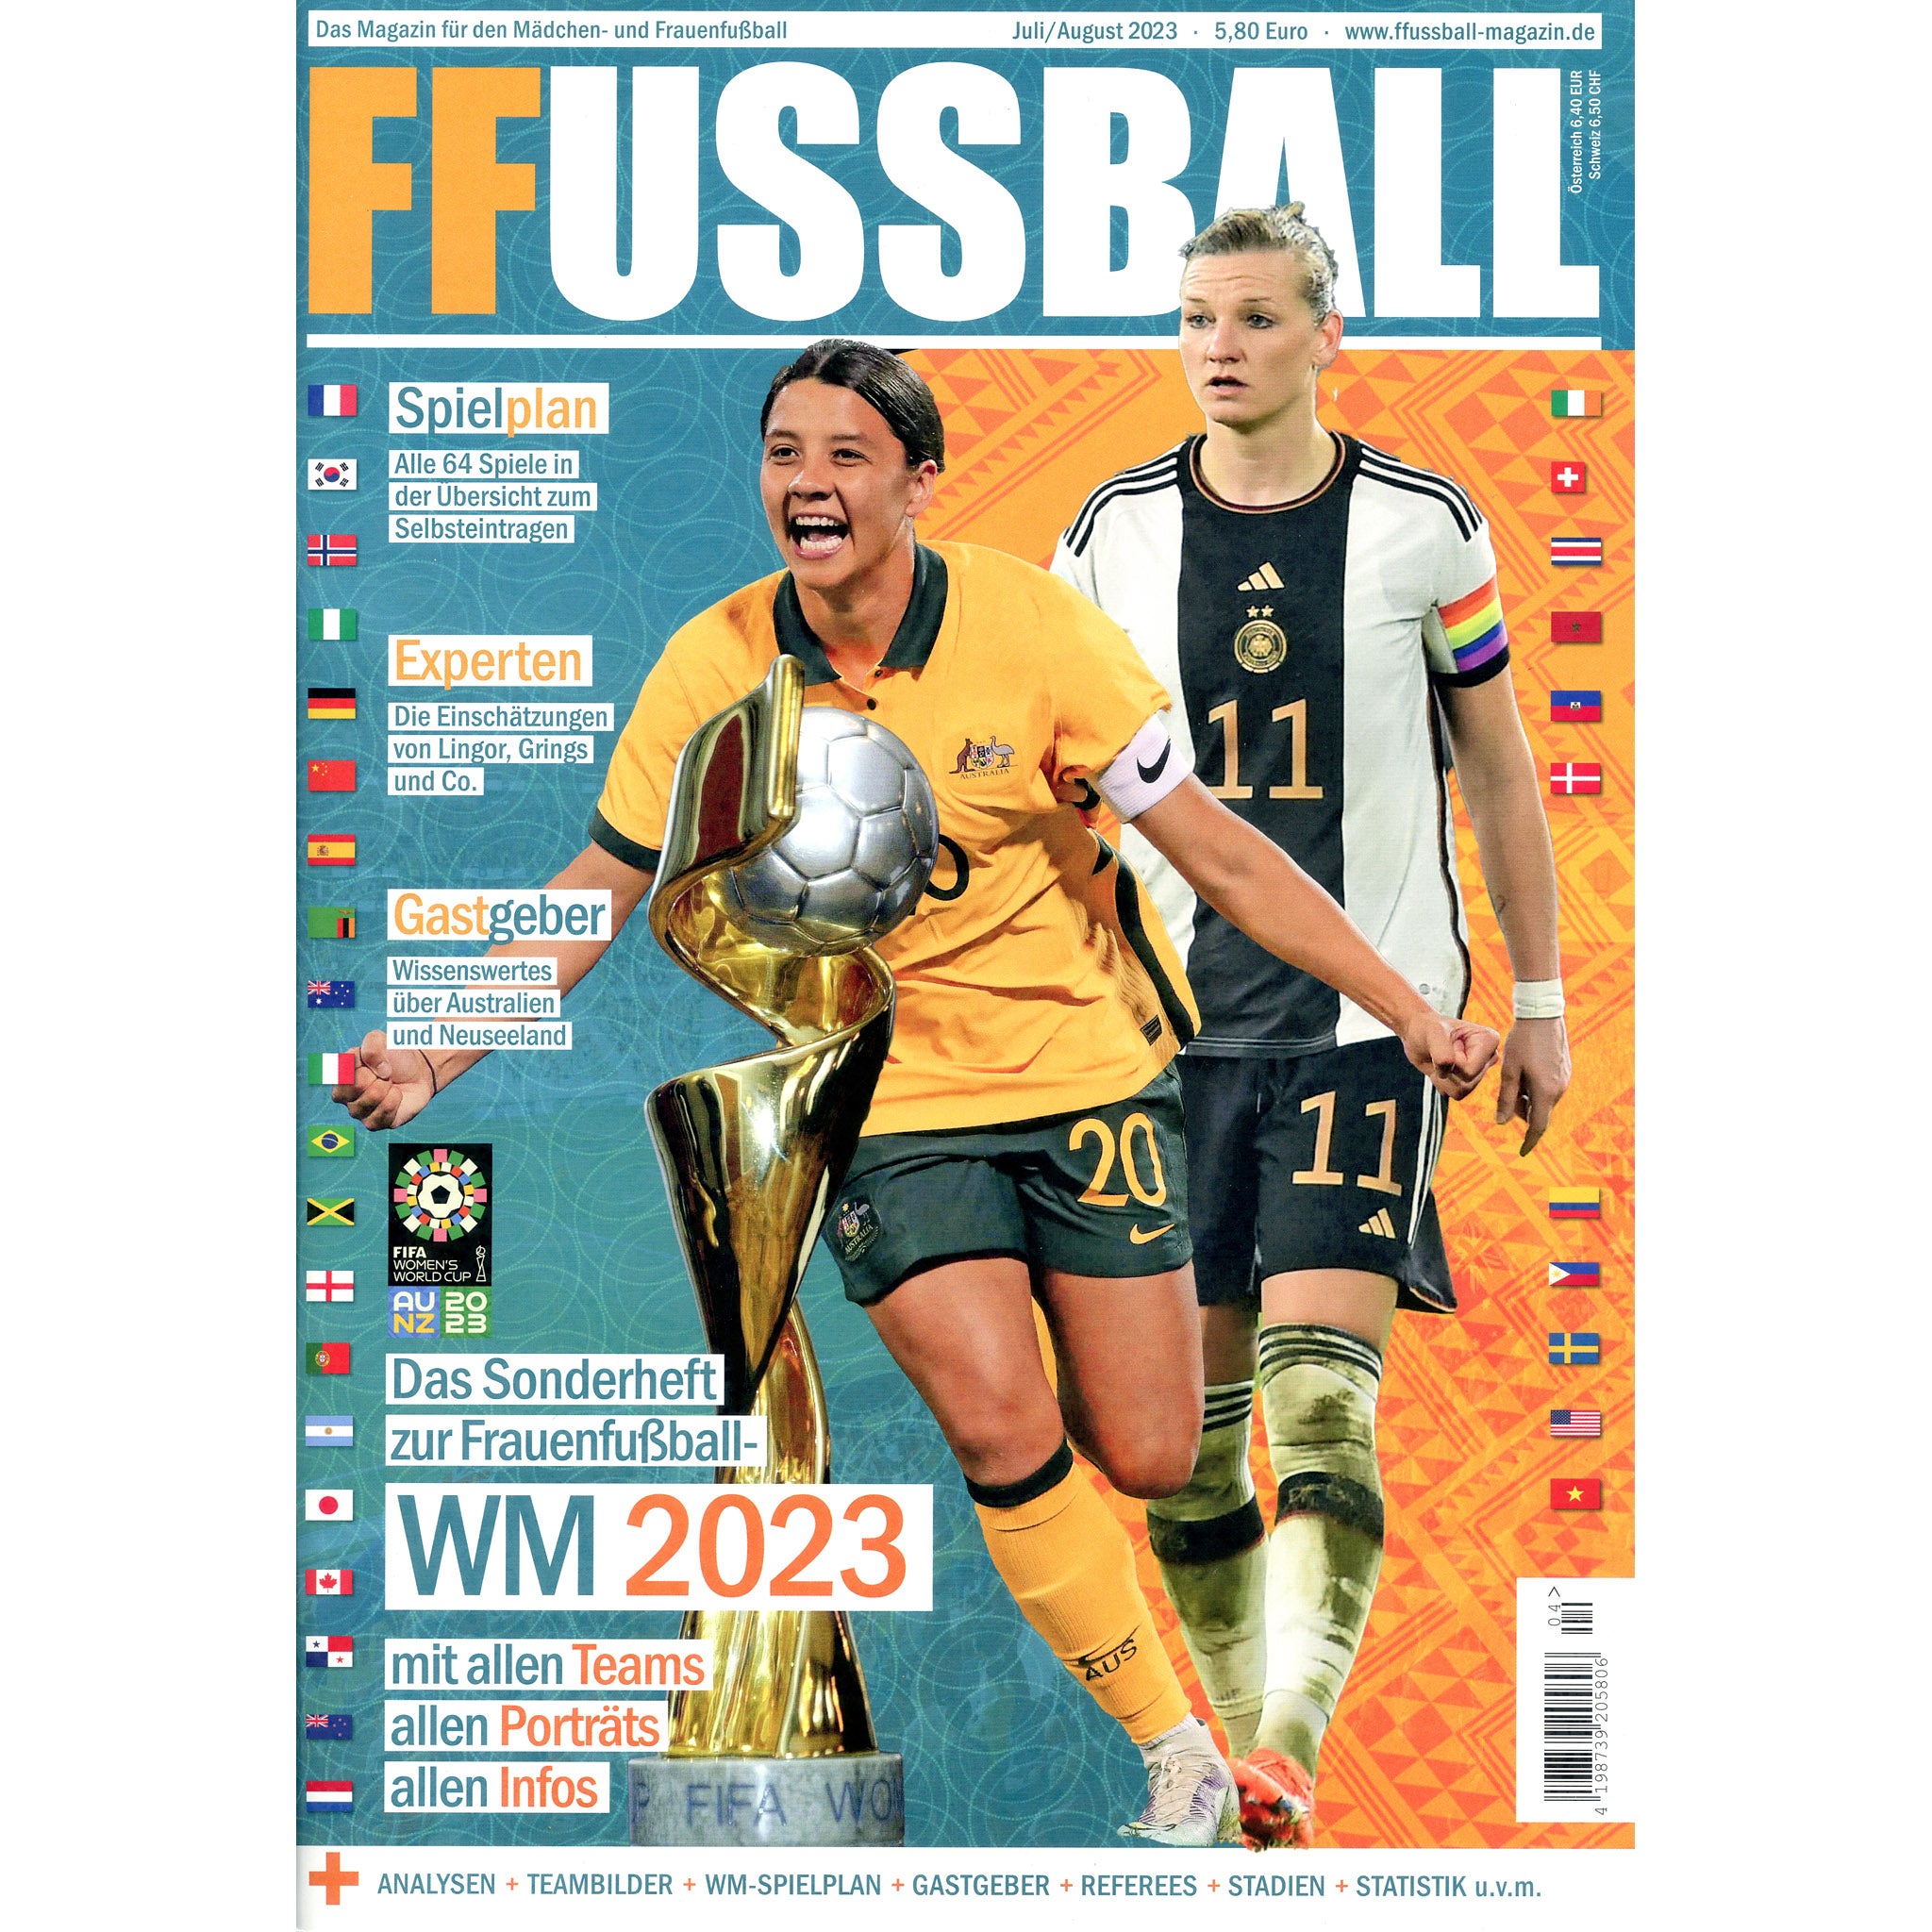 Frauen Fussball Sonderheft WM 2023 (German Women's World Cup Preview)